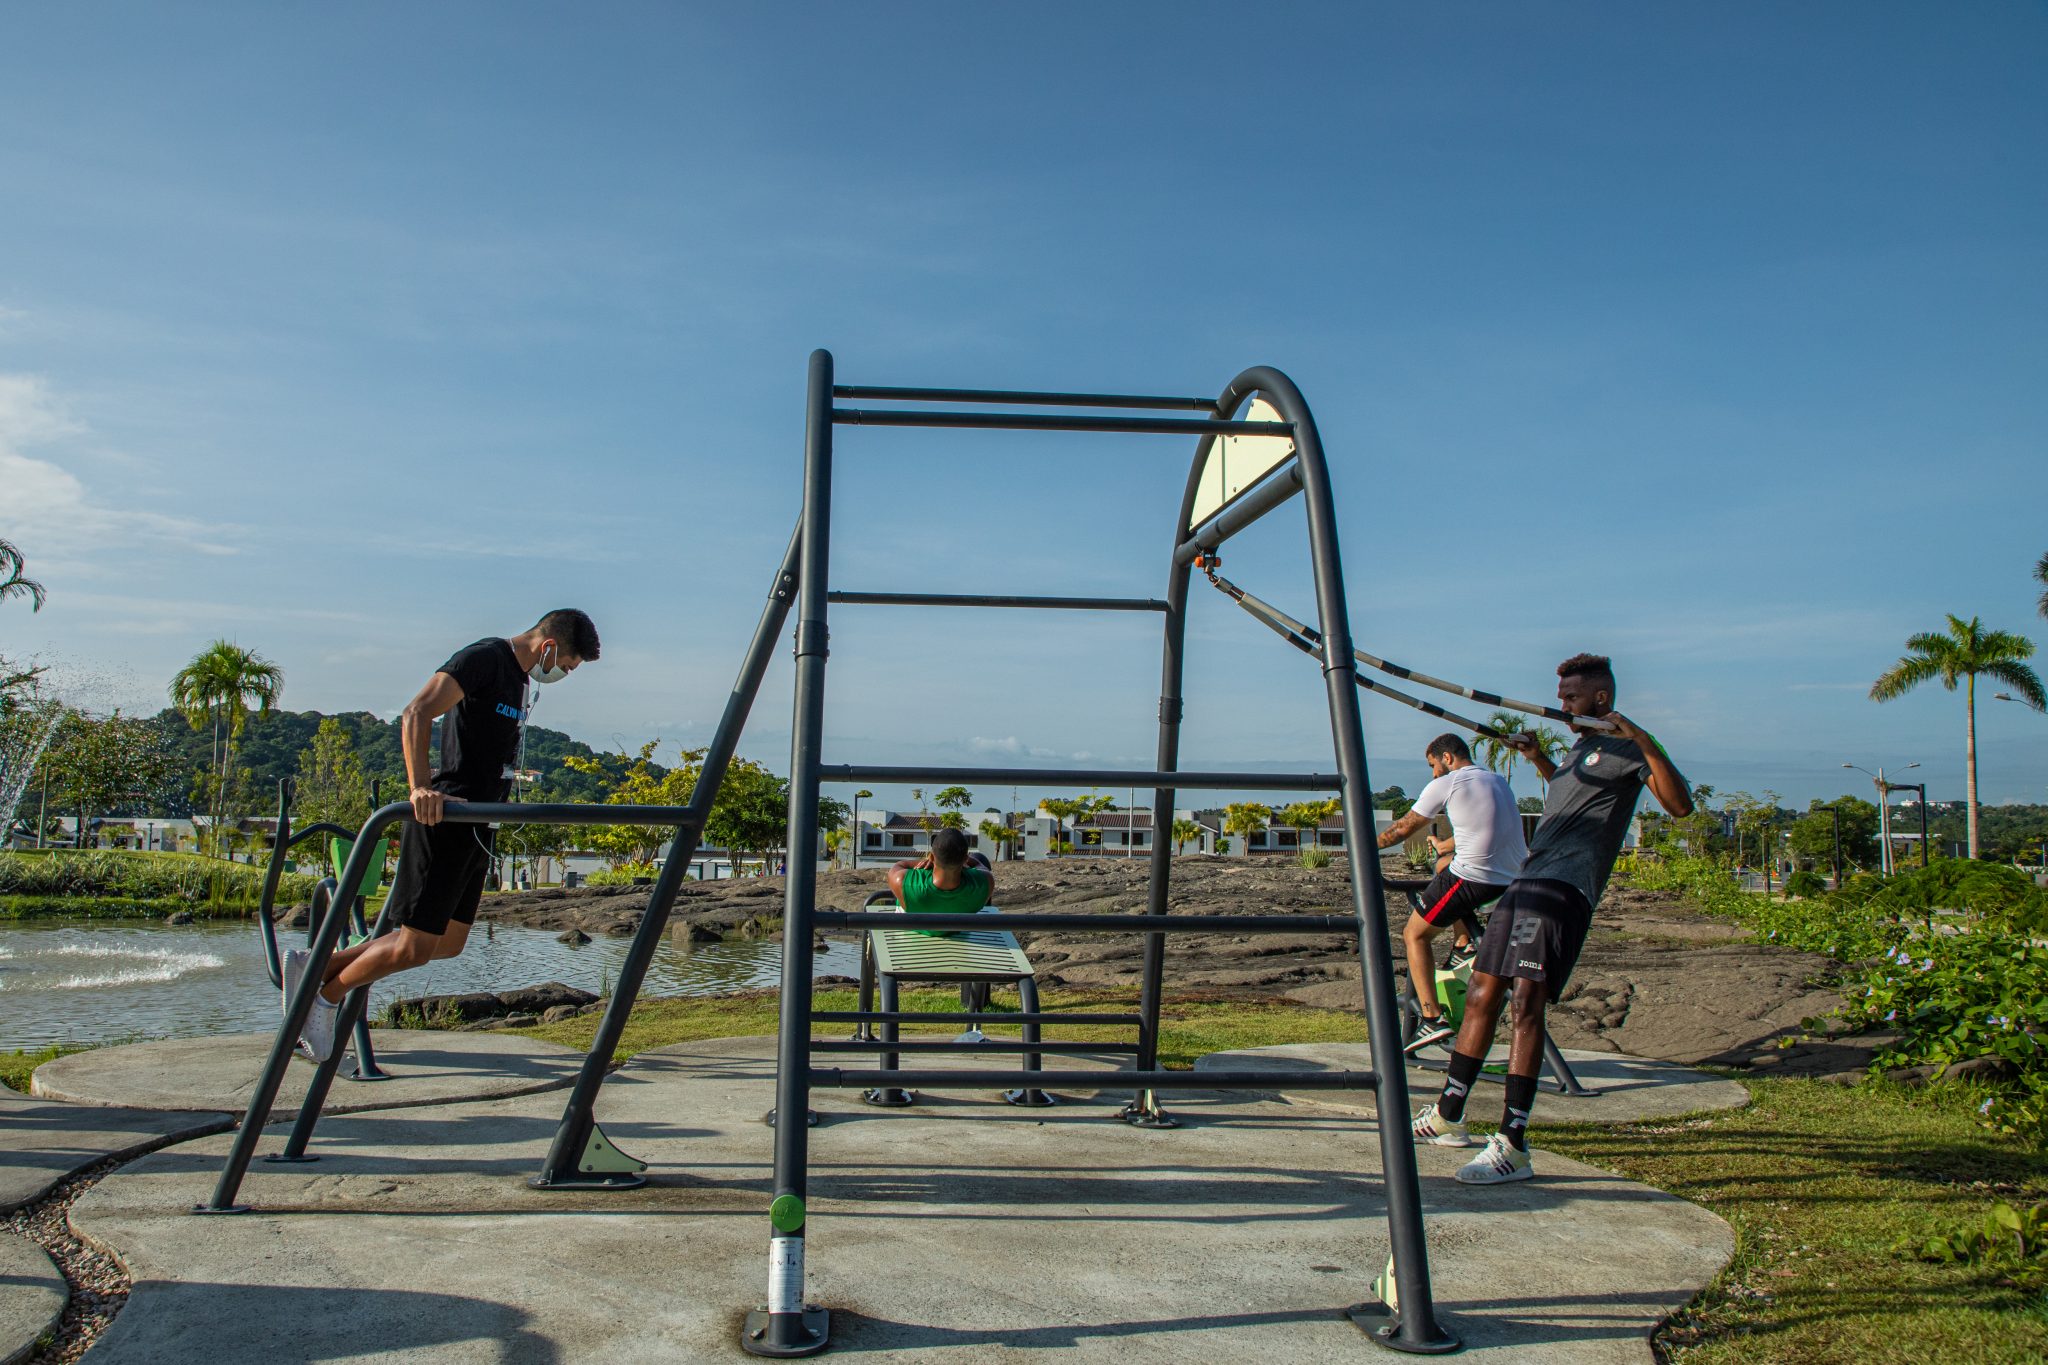 Personas ejercitándose en el área de gimnasio exterior en el Parque RACH en Paseo del Norte.